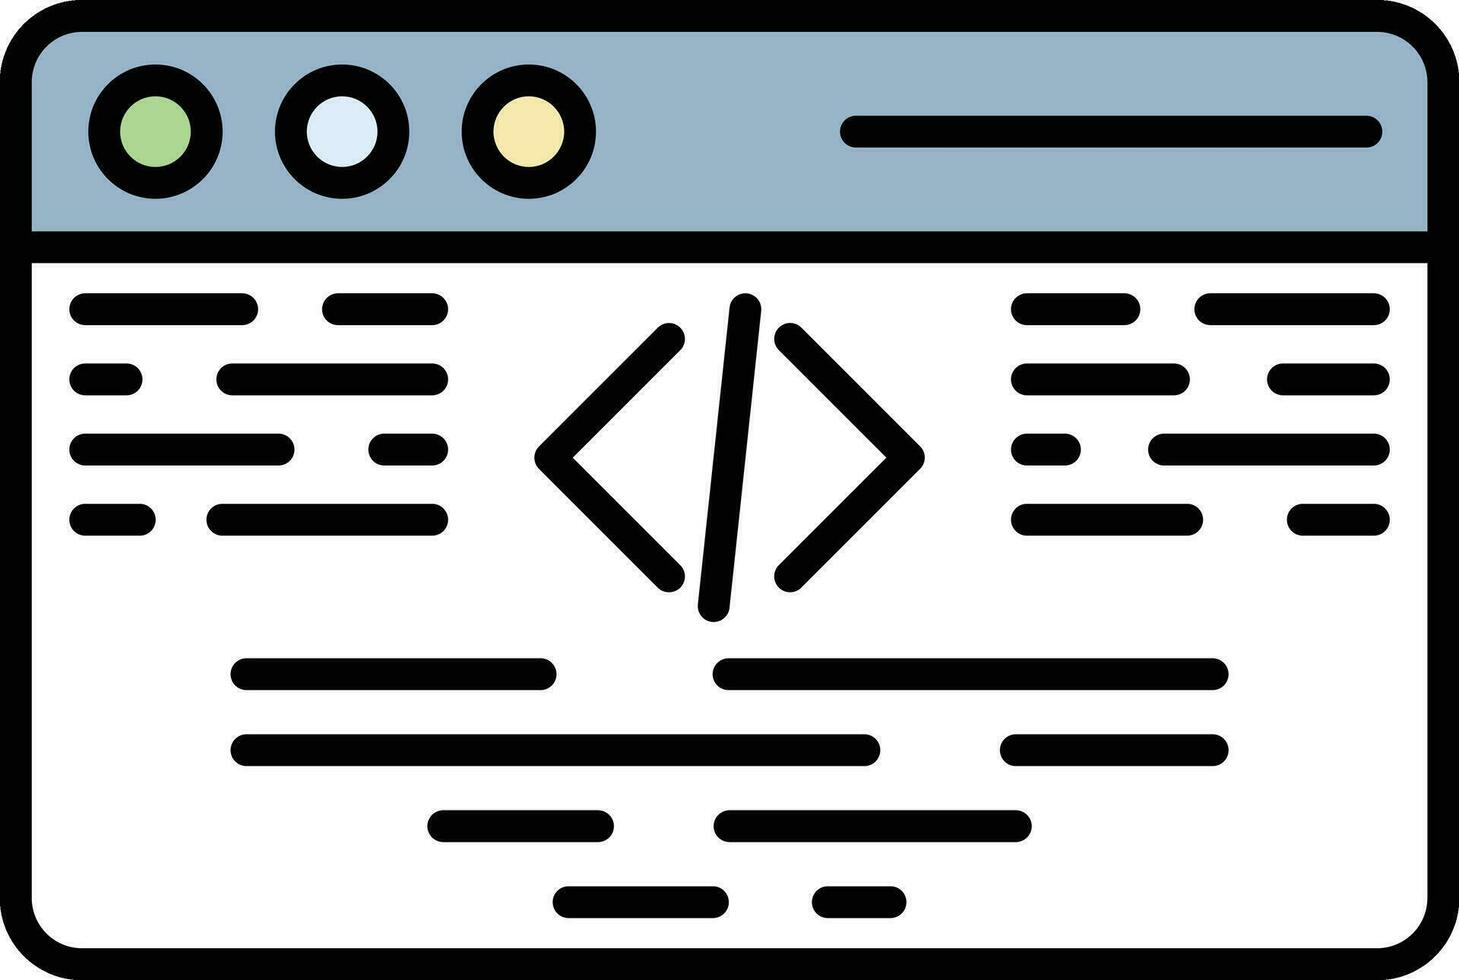 programmazione linguaggio vettore icona